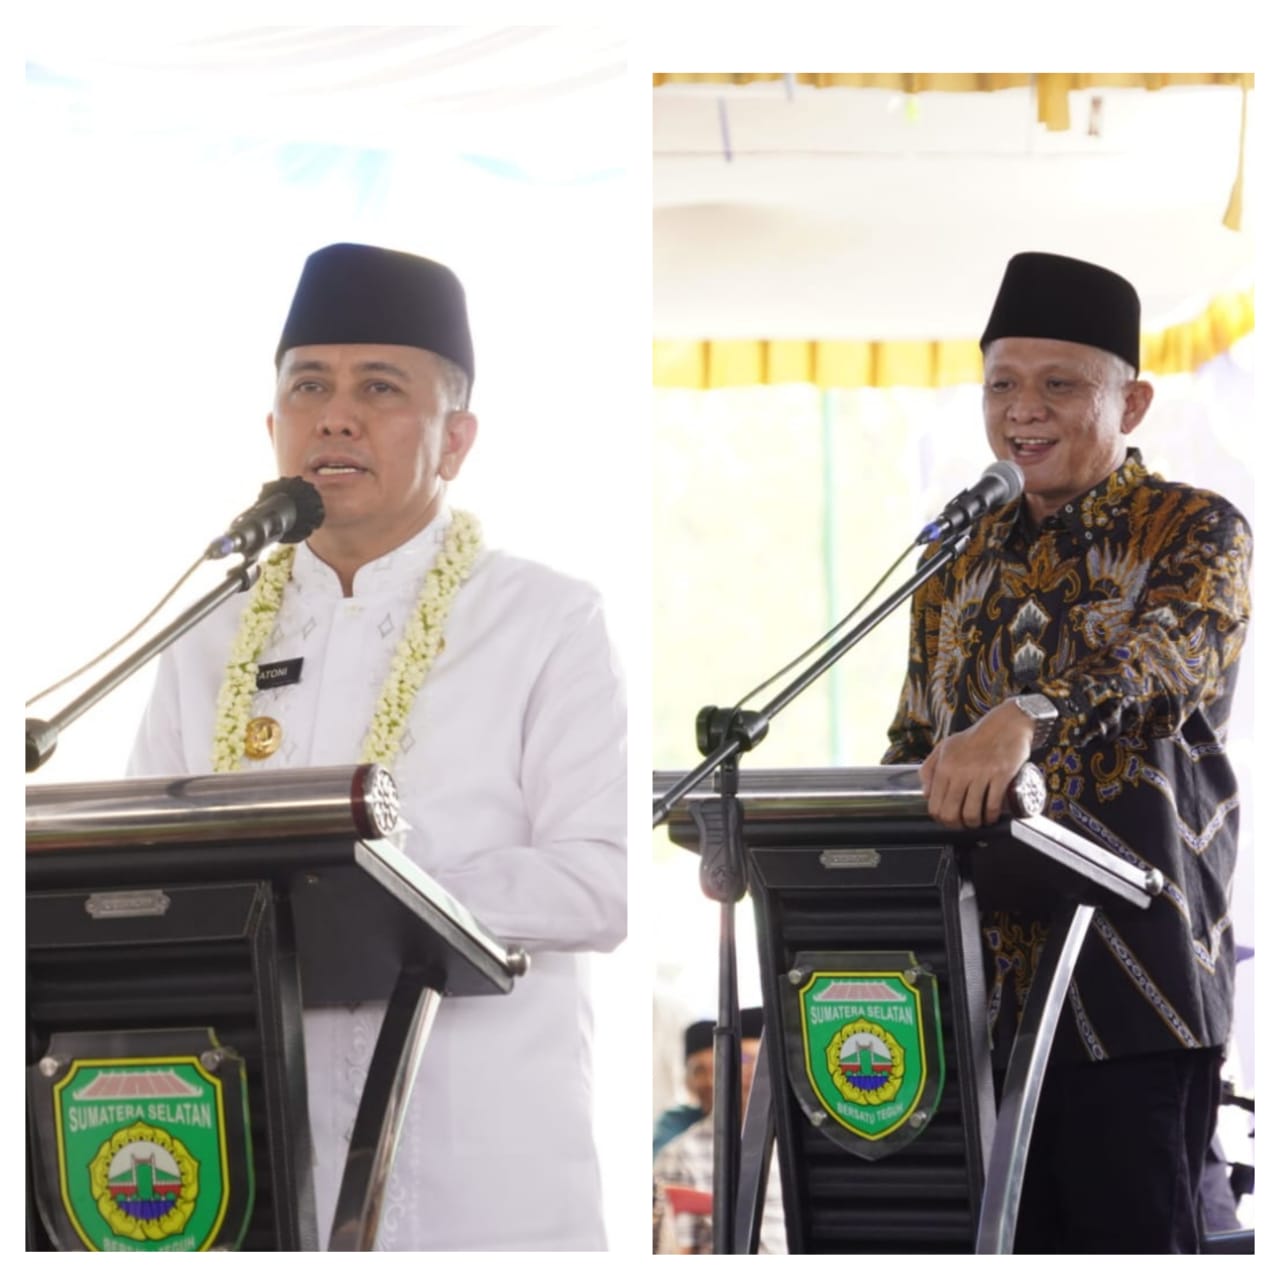 Akrab! Pj Gubernur Sumsel Bersama Bupati OKU Timur Hadiri Pengajian Akbar Di Desa Tanjung Mas